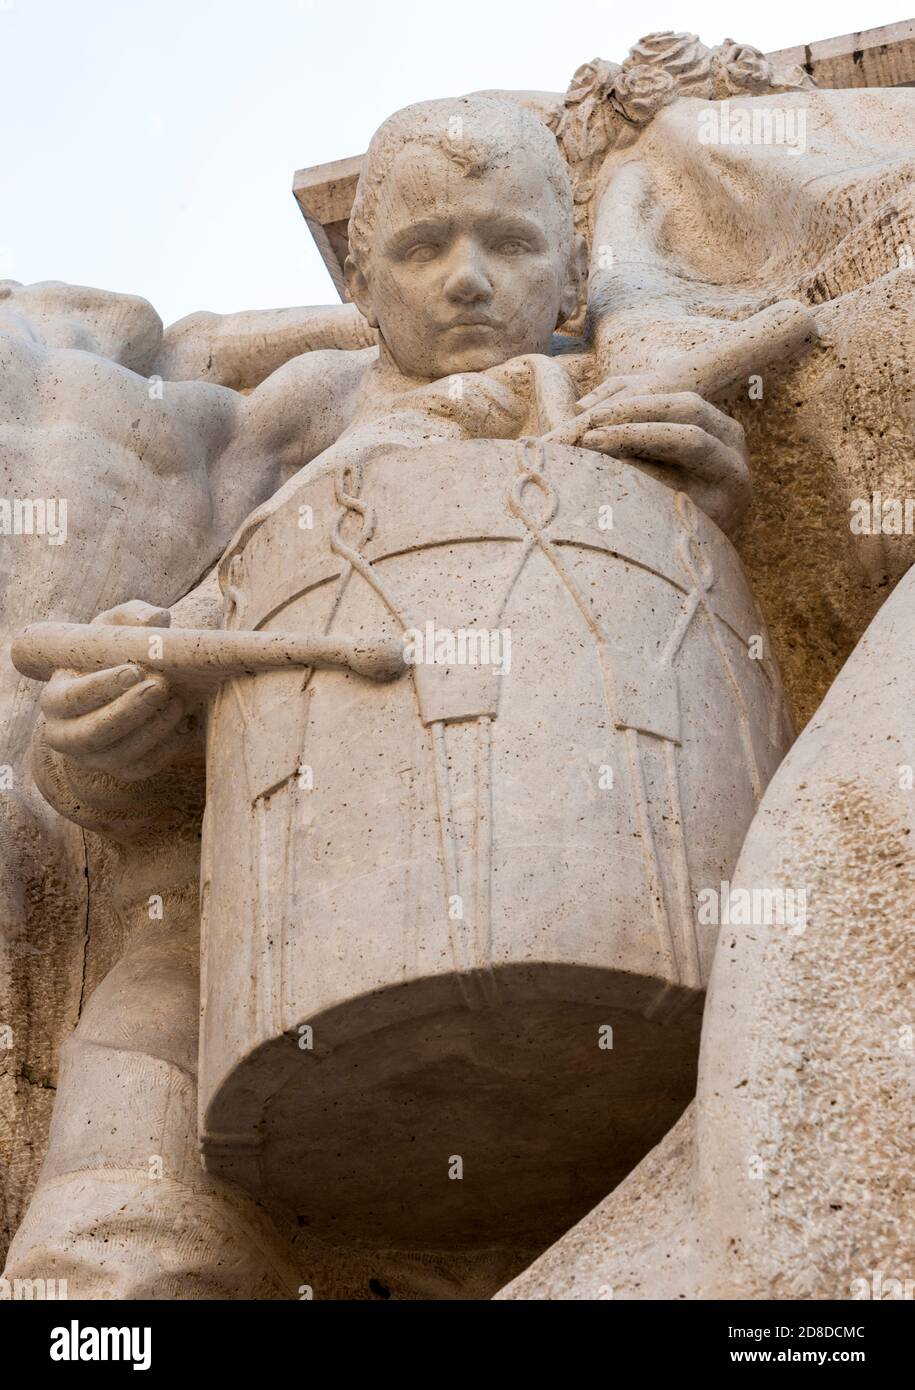 Porträt eines Trommler-Jungen aus Stein, der direkt in die Kamera starrt Stockfoto